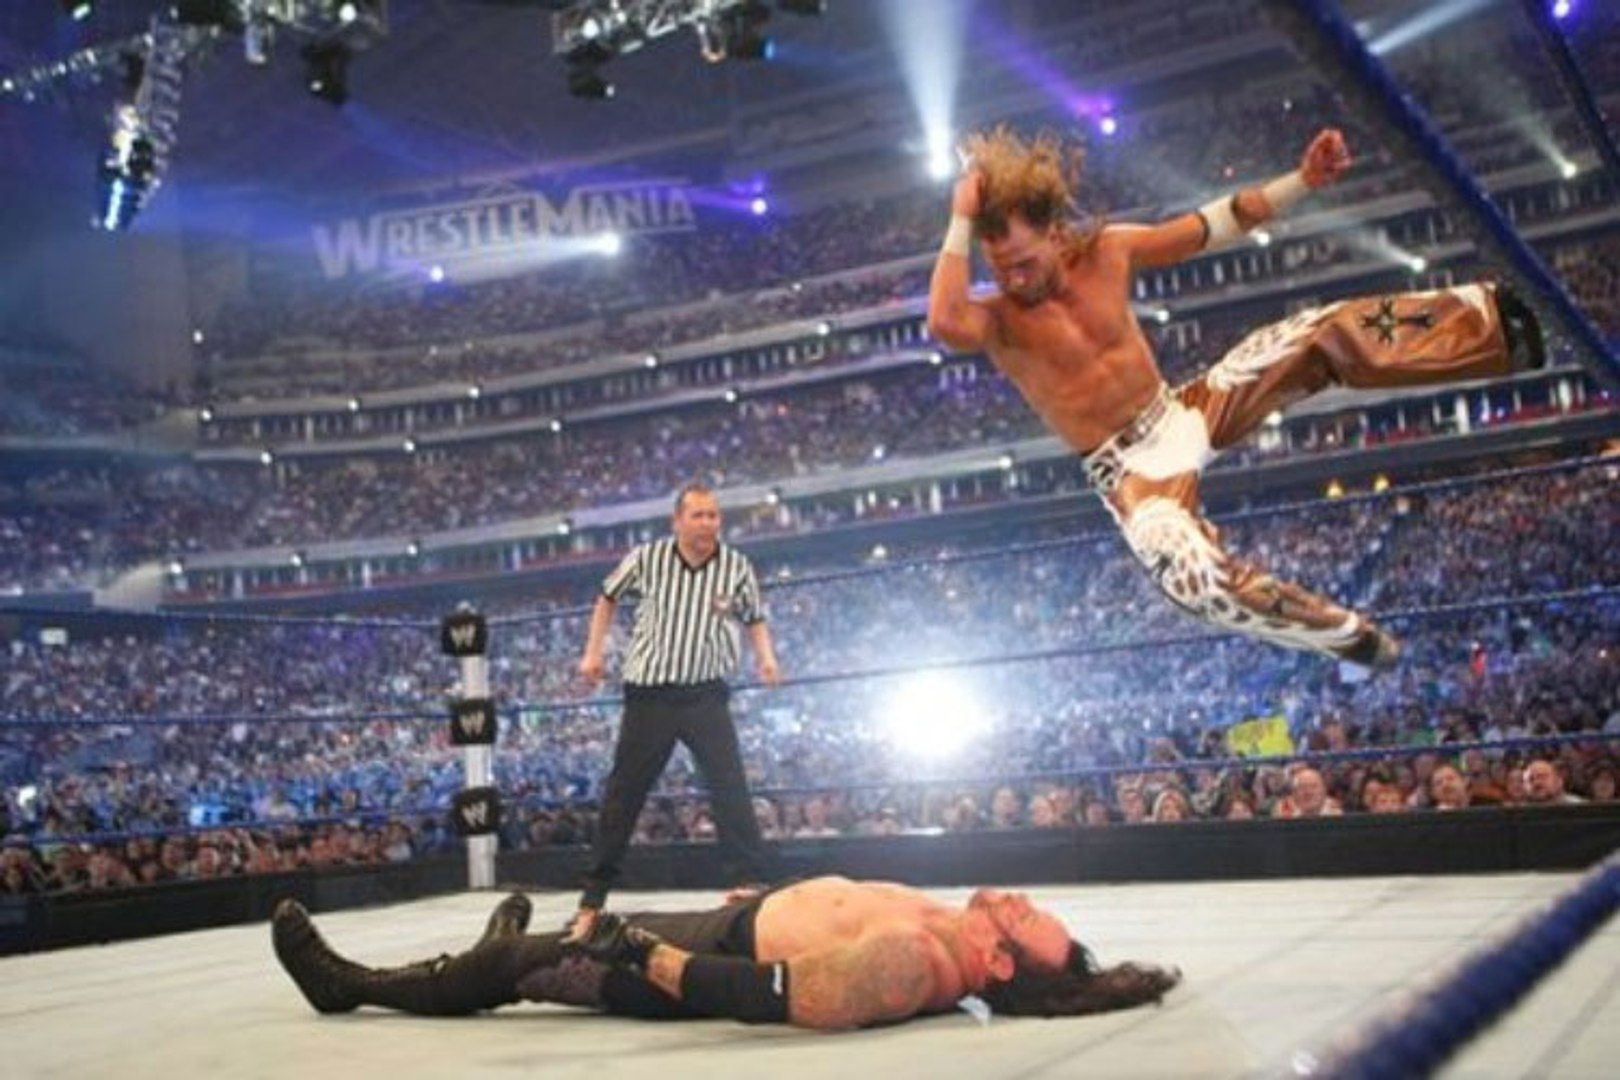 Shawn Miachels vs Undertaker at WrestleMania 25